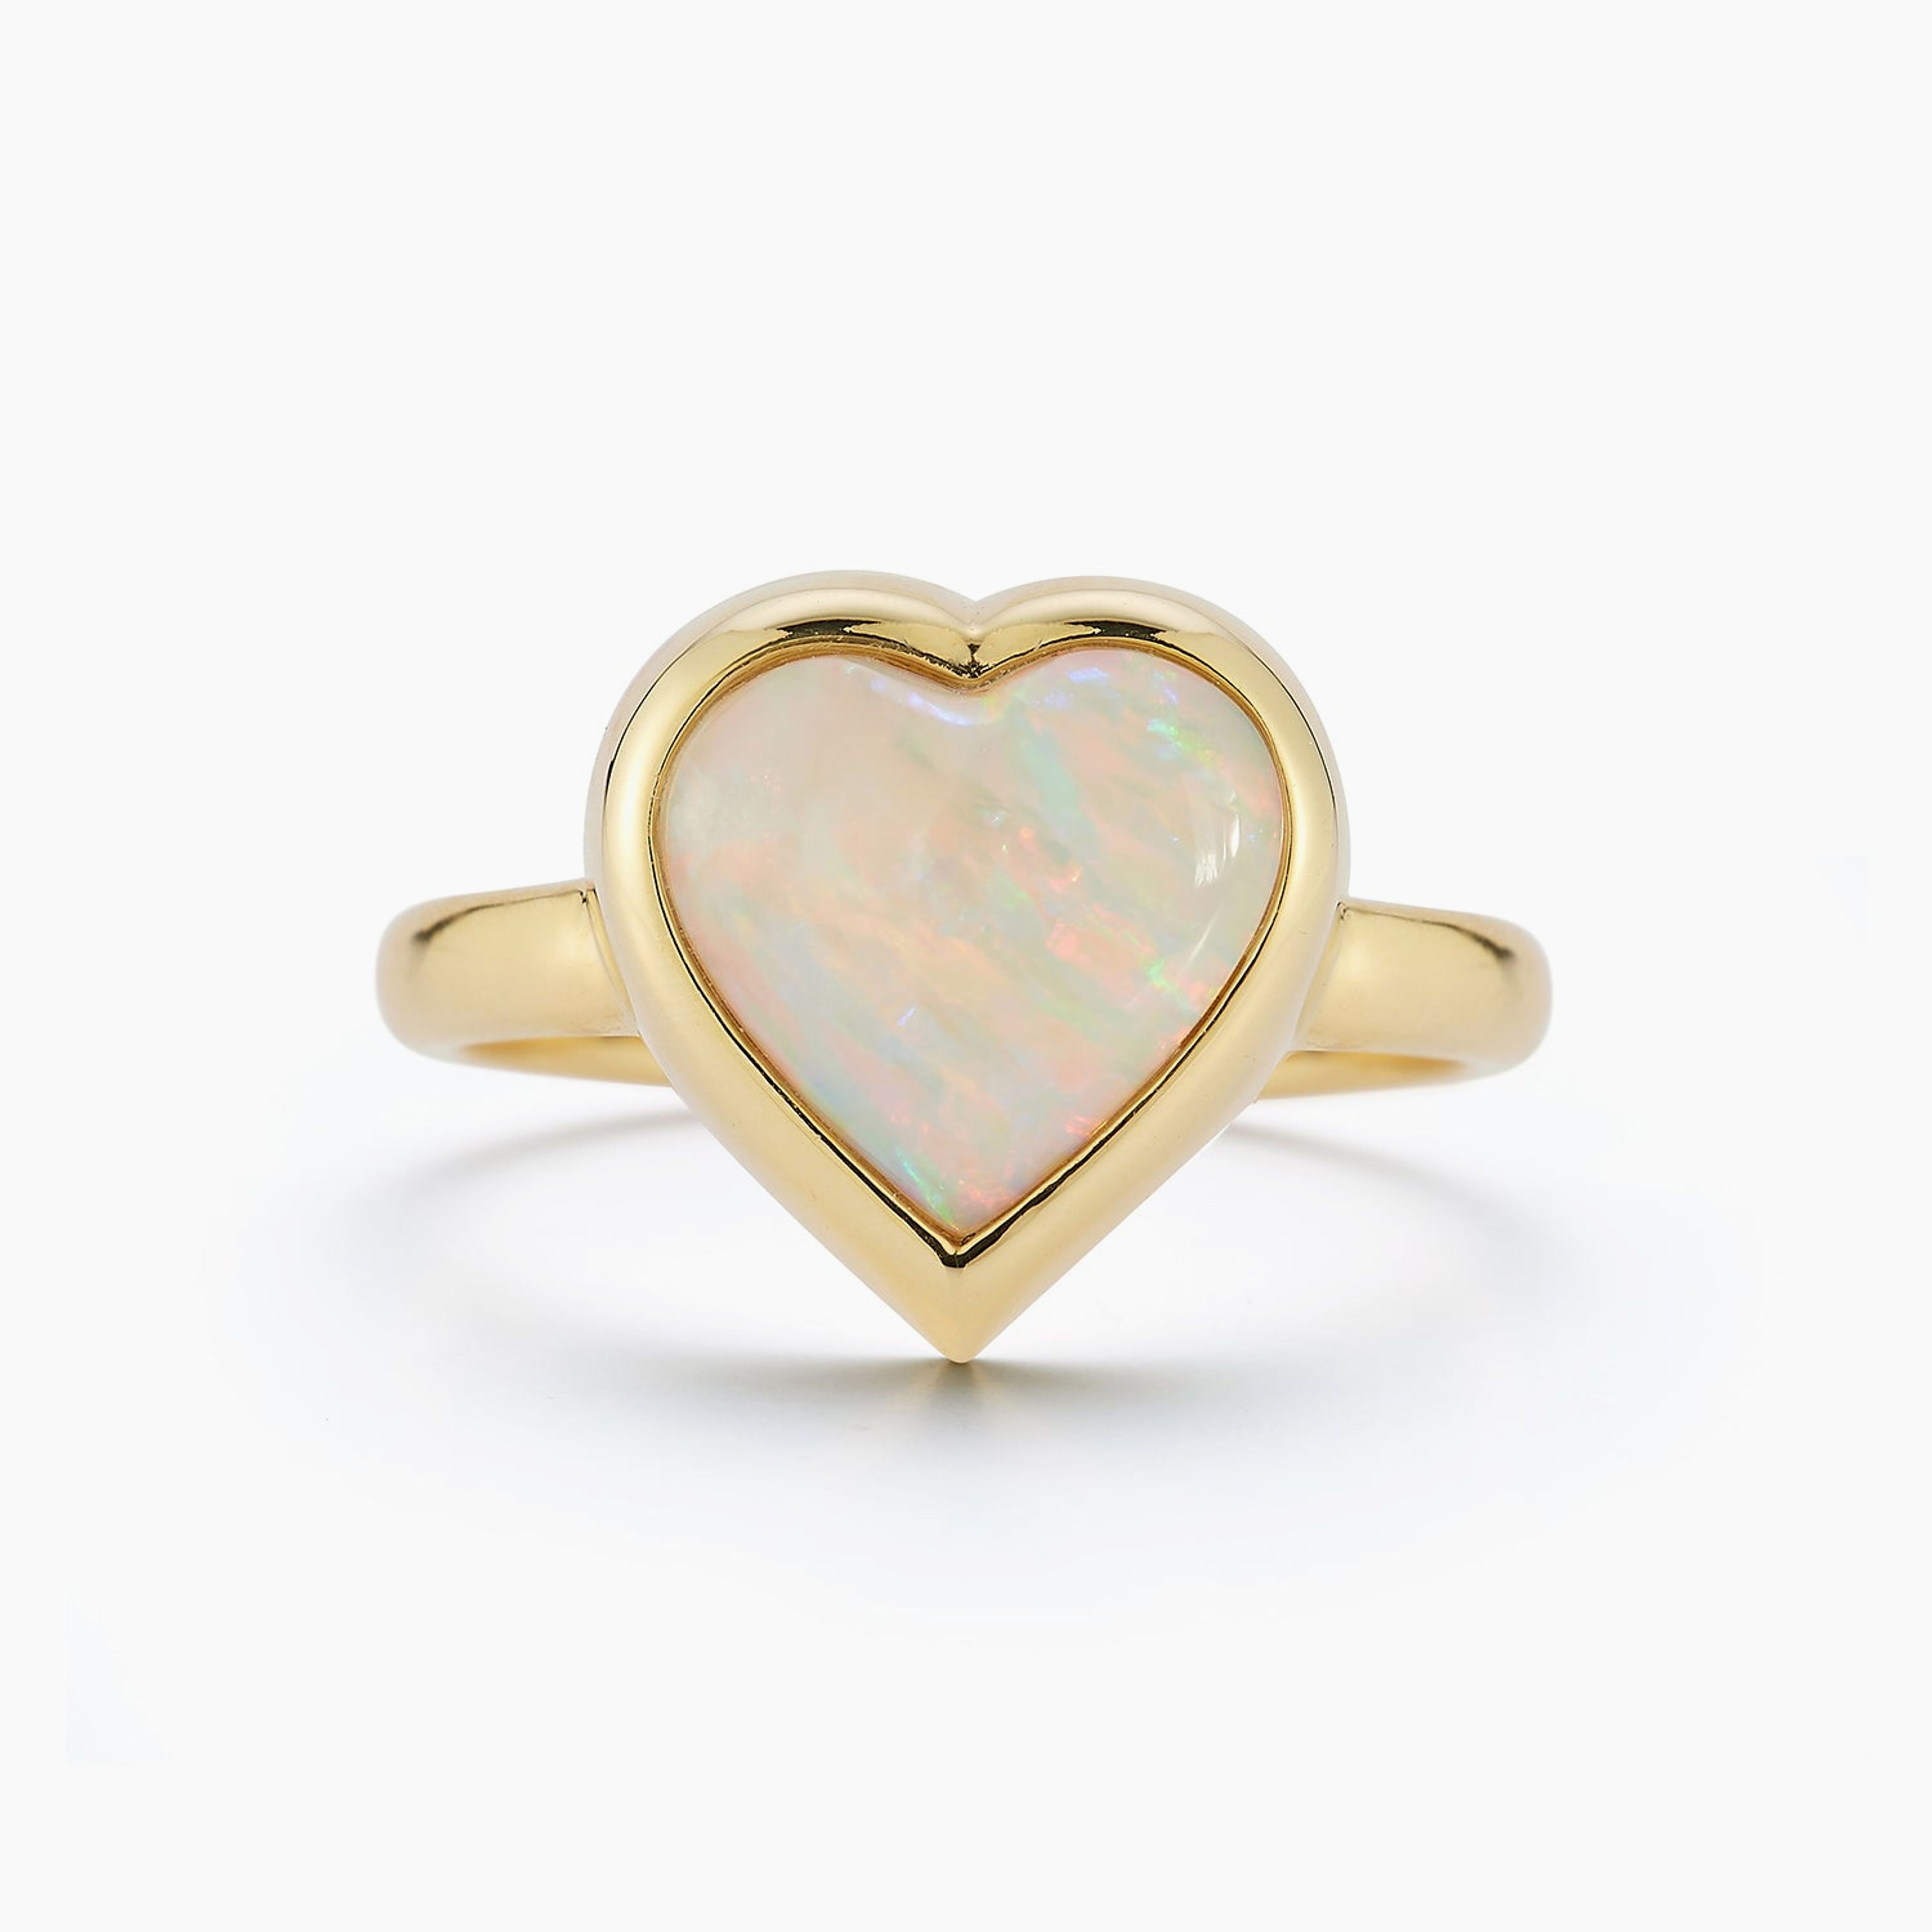 Large Australian Opal Heart Ring